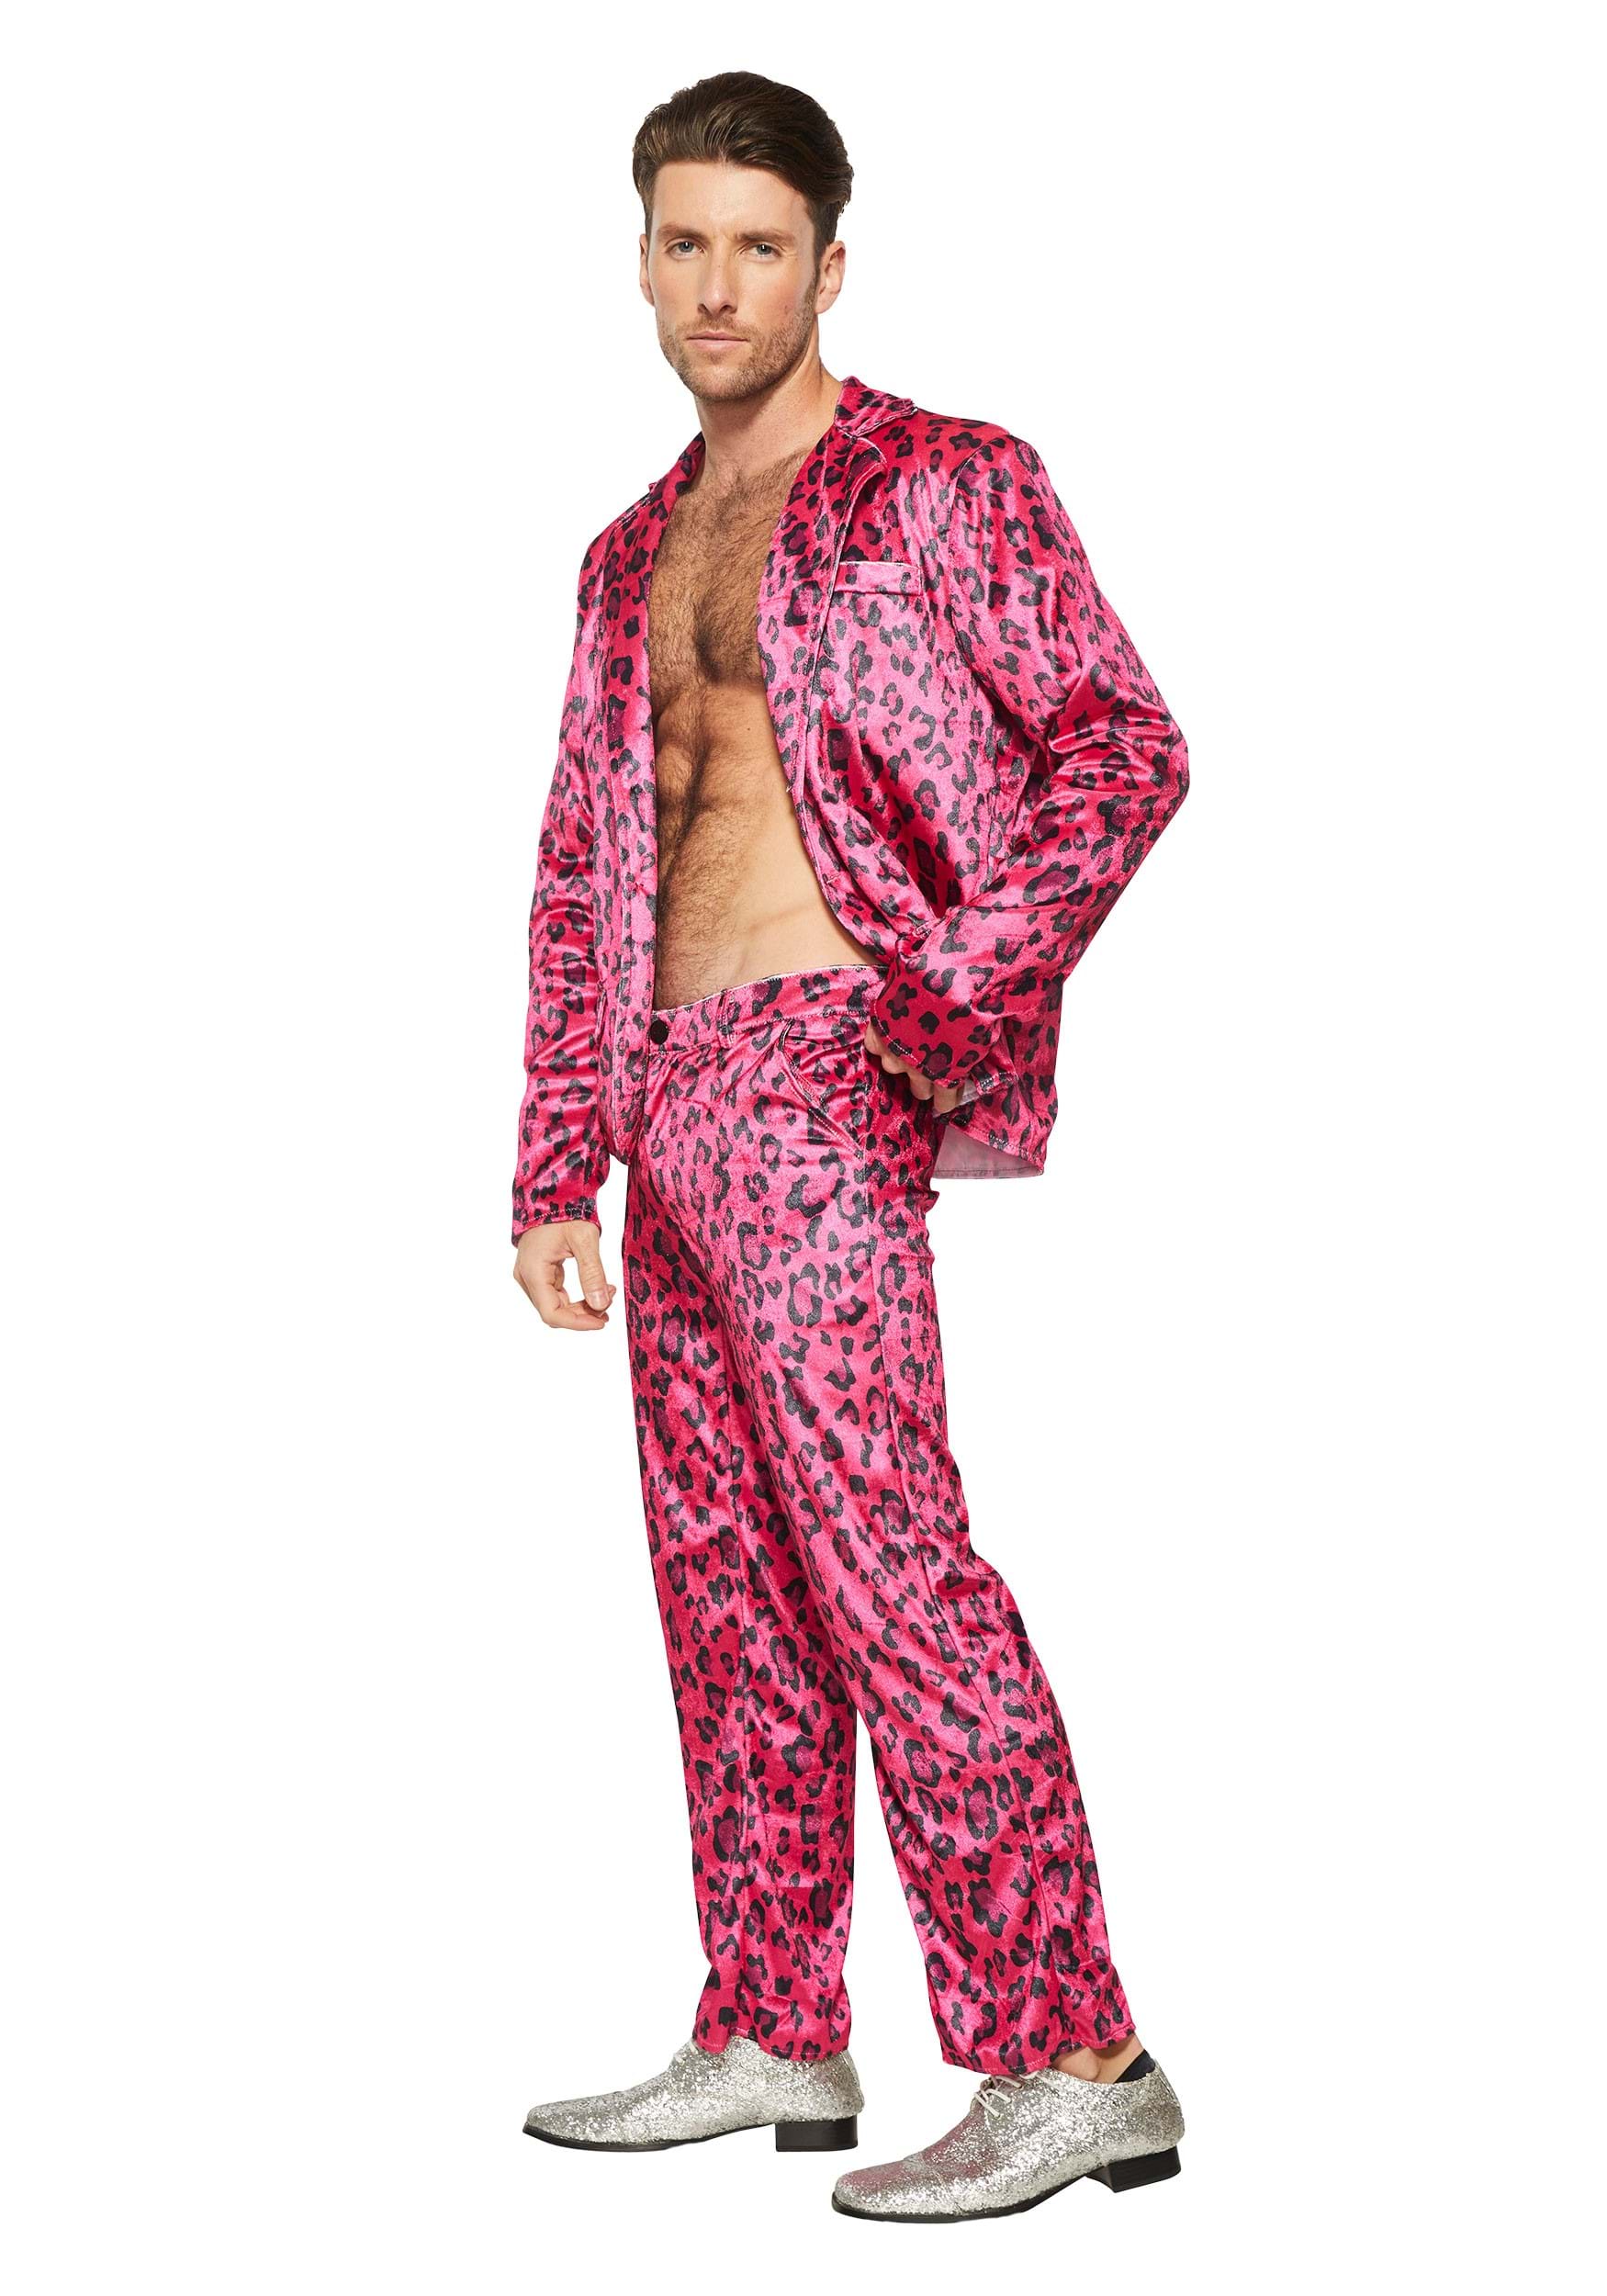 Pink Leopard Rock Star Men's Fancy Dress Costume , Celebrity Fancy Dress Costumes